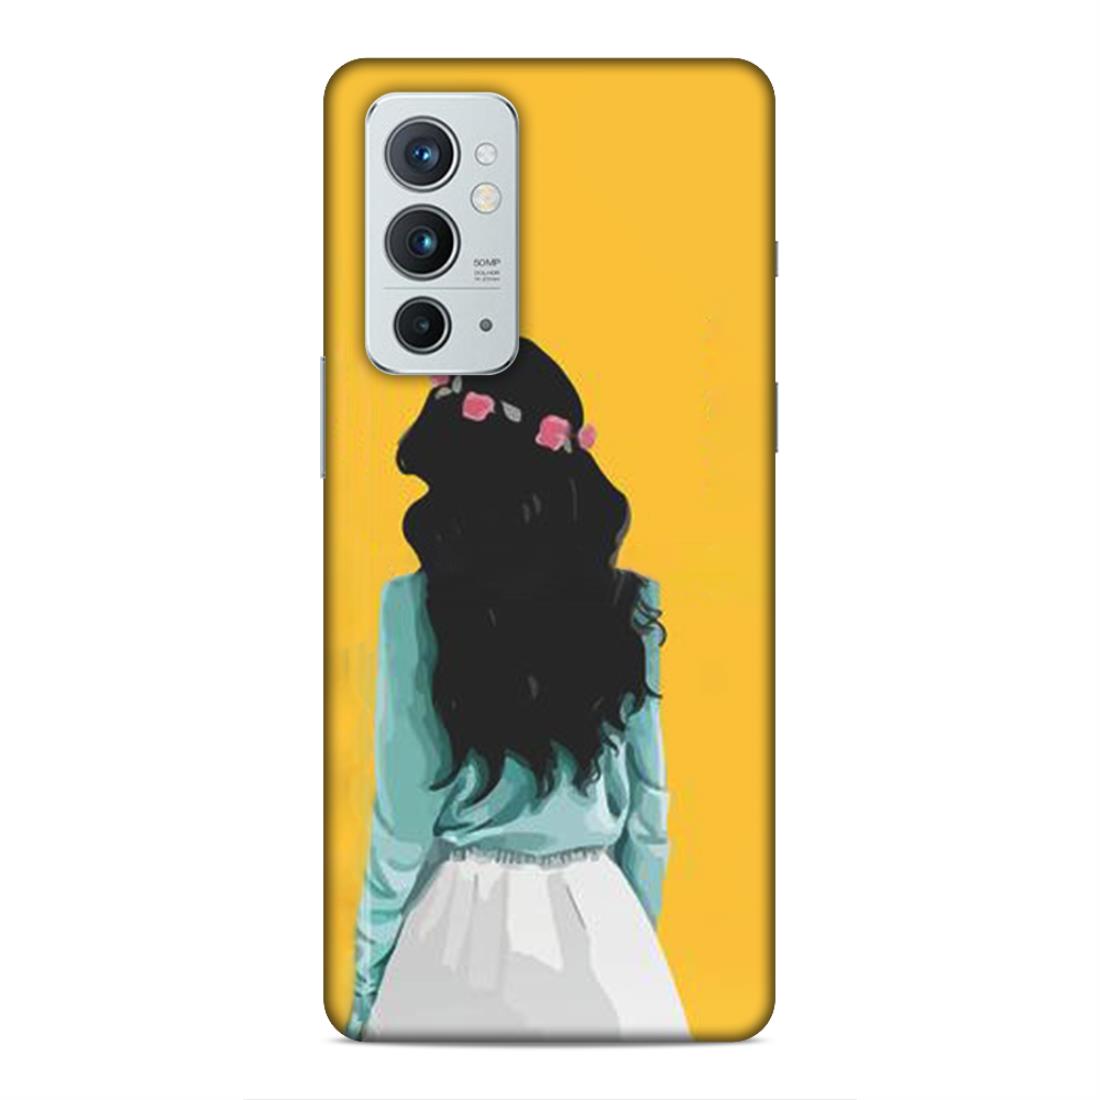 Stylish Girl Hard Back Case For OnePlus 9 RT 5G